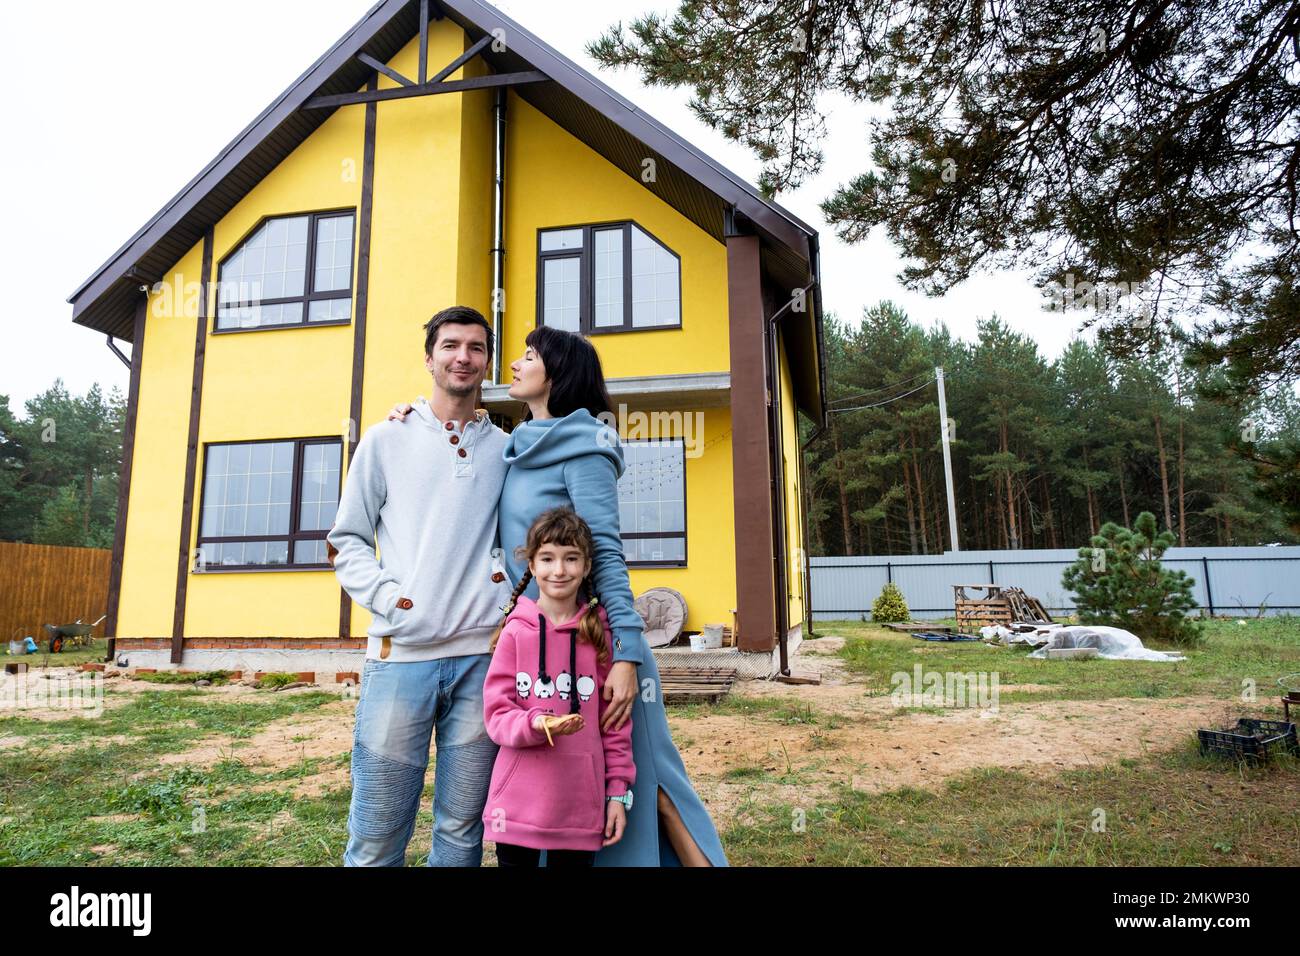 Famille heureuse dans la cour d'une maison inachevée - achat d'un chalet, hypothèque, prêt, relocalisation, construction Banque D'Images